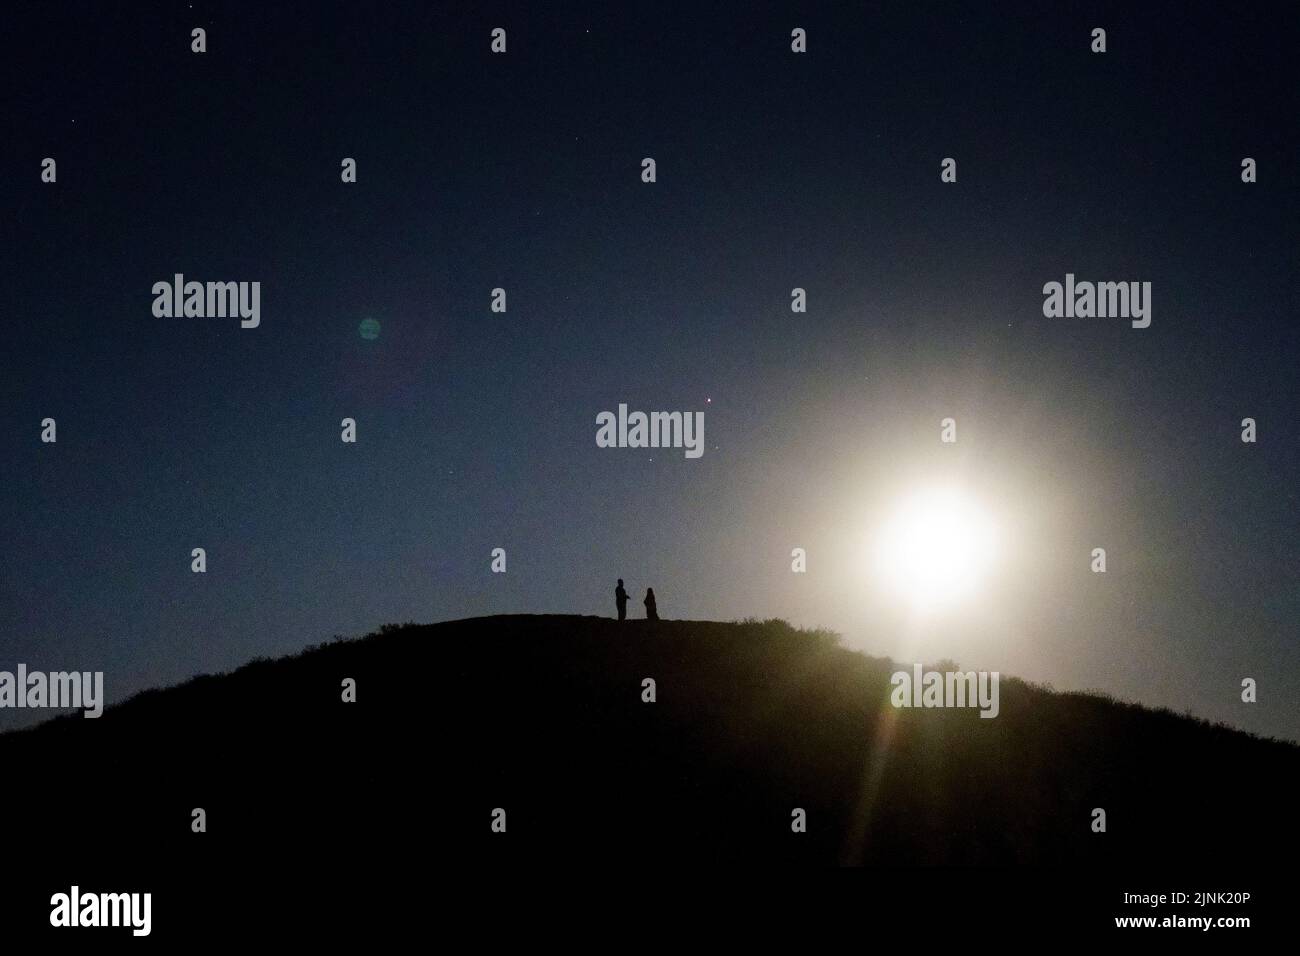 Ein Paar beobachtet den Sturgeon-Supermond, den letzten Supermond des Jahres, von einem Hügel in Ealing, West-London. Bilddatum: Donnerstag, 11. August 2022. Stockfoto